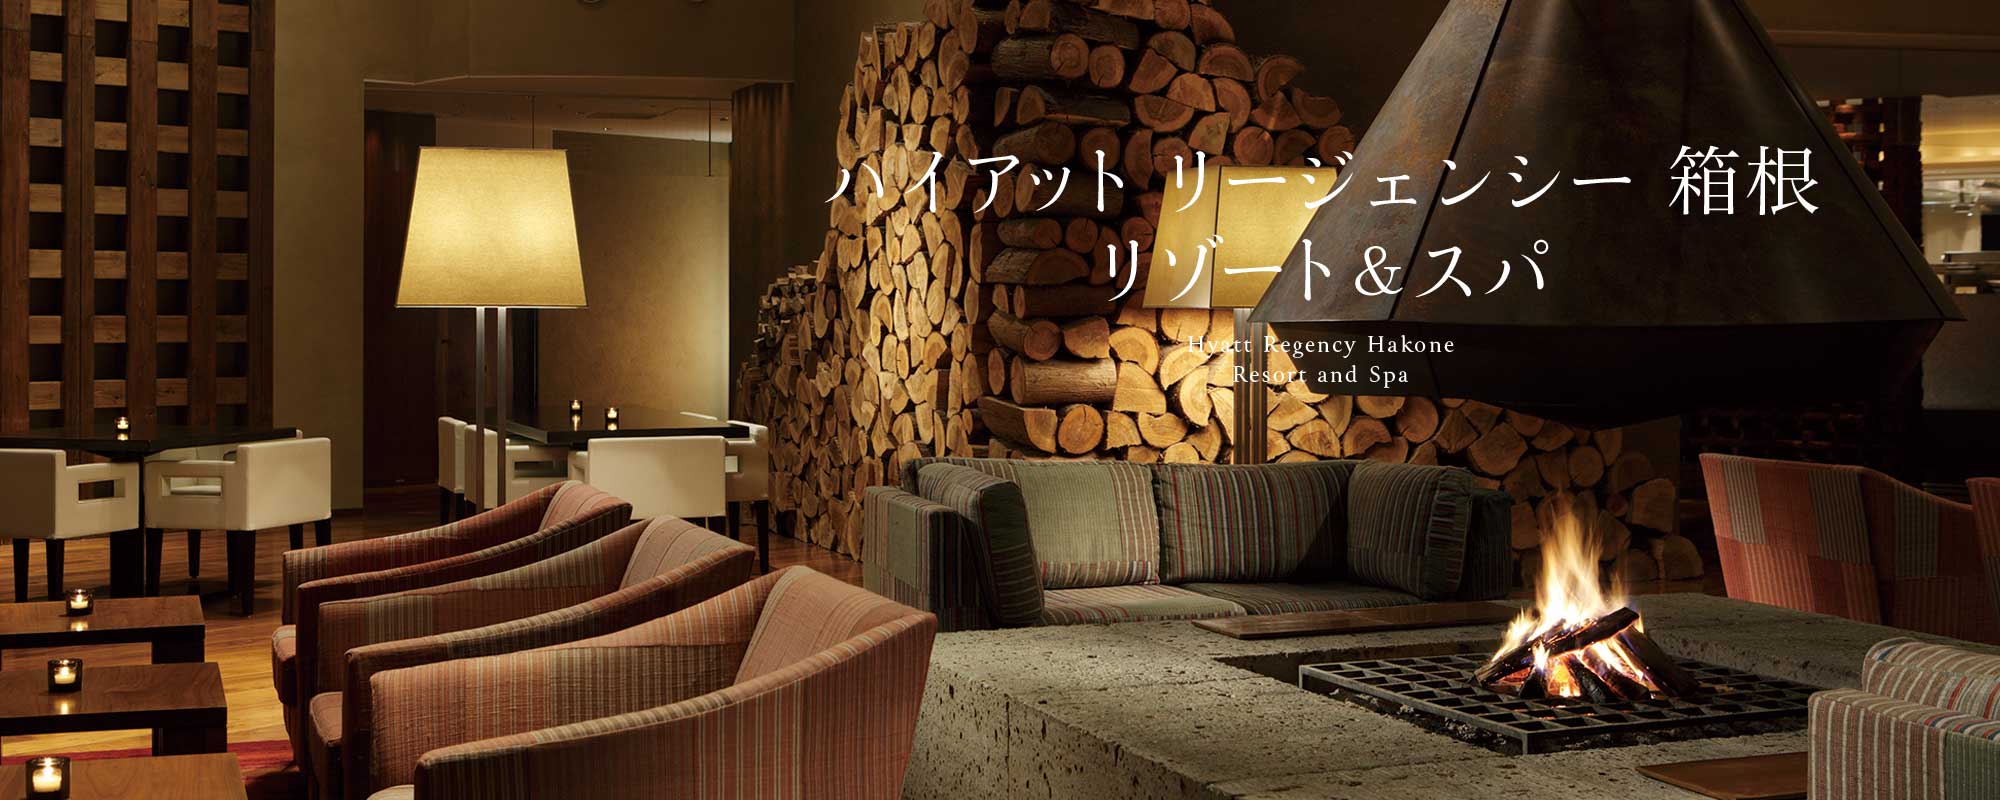 ハイアット リージェンシー 箱根 リゾート ＆ スパ - Hyatt Regency Hakone Resort and Spa /  和風旅館が多い箱根で、温泉地の親しみ感と外資系ホテルの高品質なサービスとスパを兼ね備えた理想の温泉リゾート。